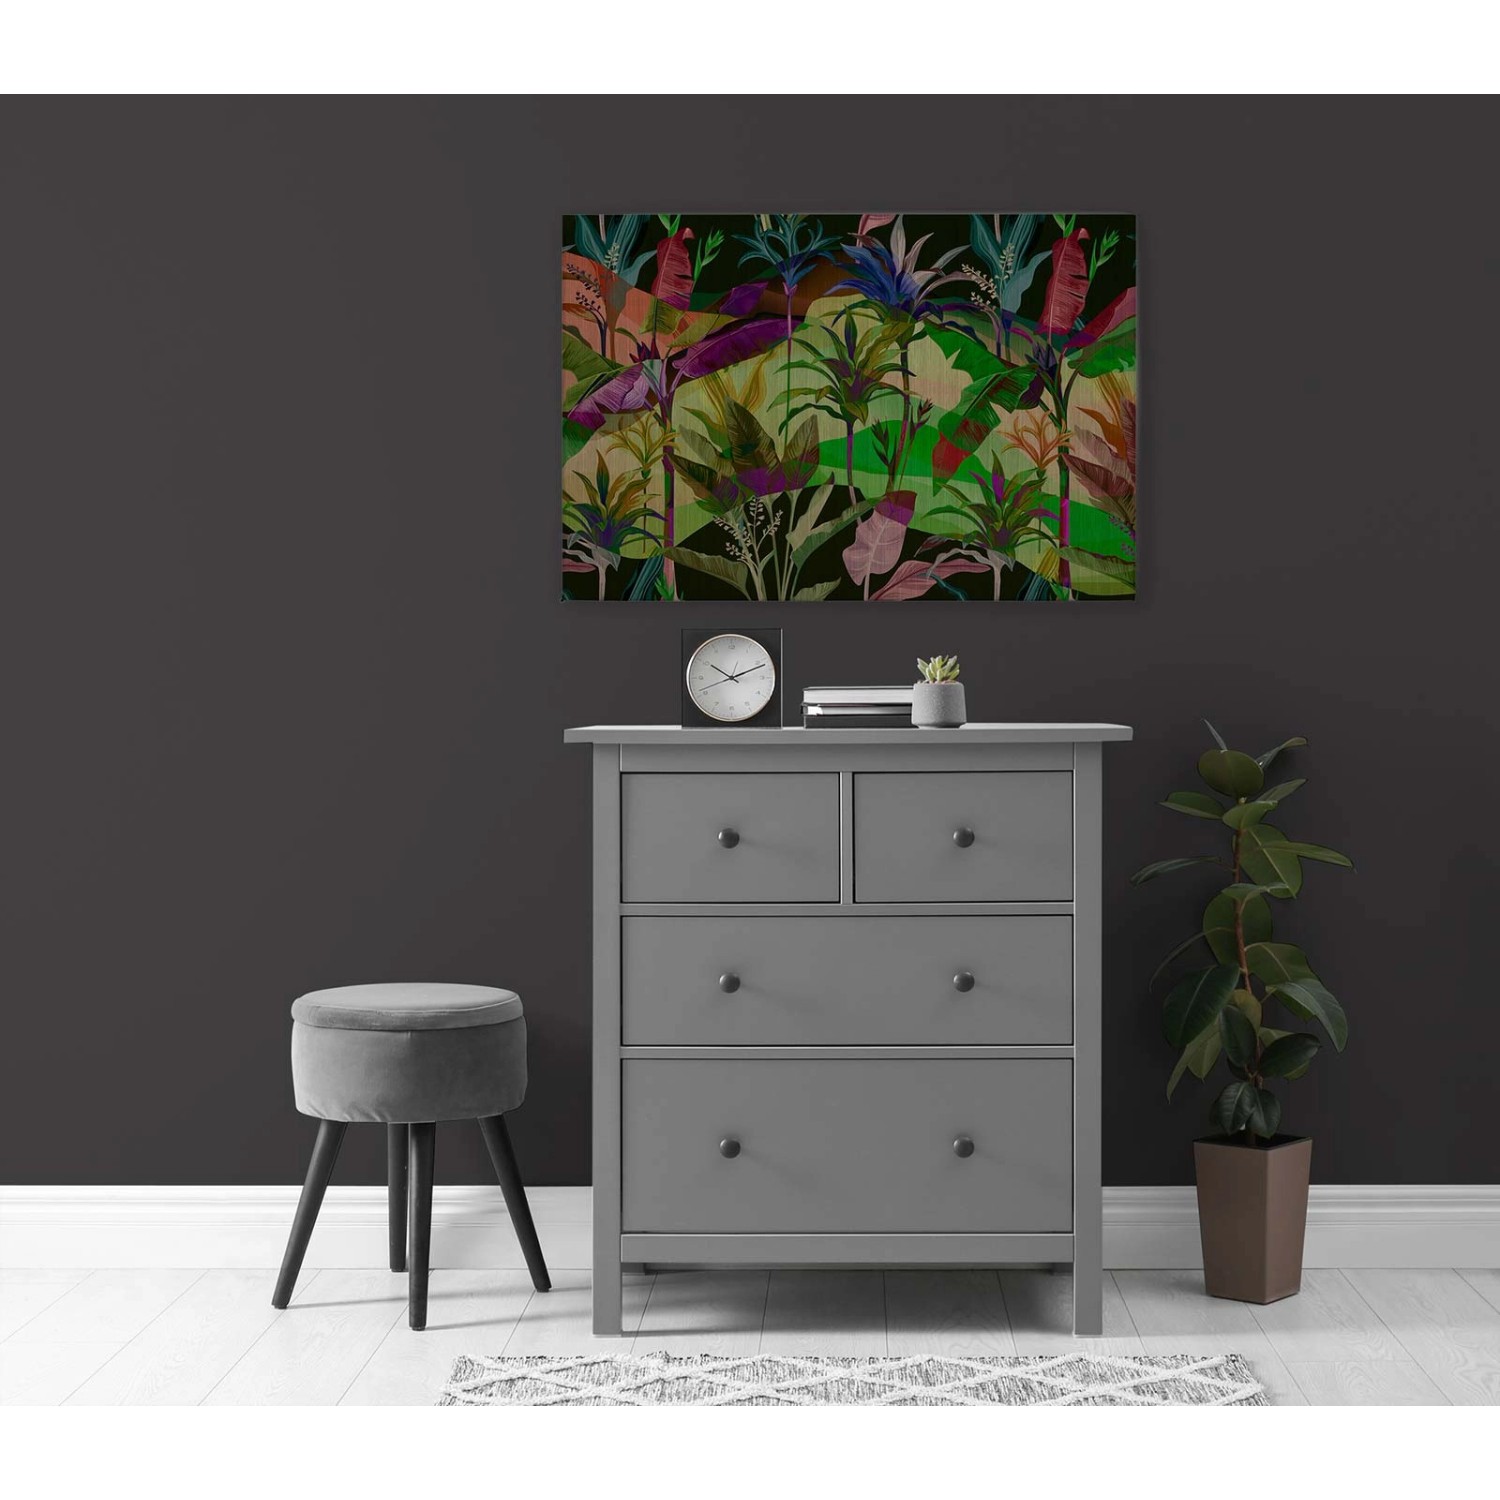 Bricoflor Bild Mit Dschungel Auf Leinwand In 120 X 80 Cm Buntes Wandbild Mit Palmen Motiv Ideal Für Teenager Und Wohnzim